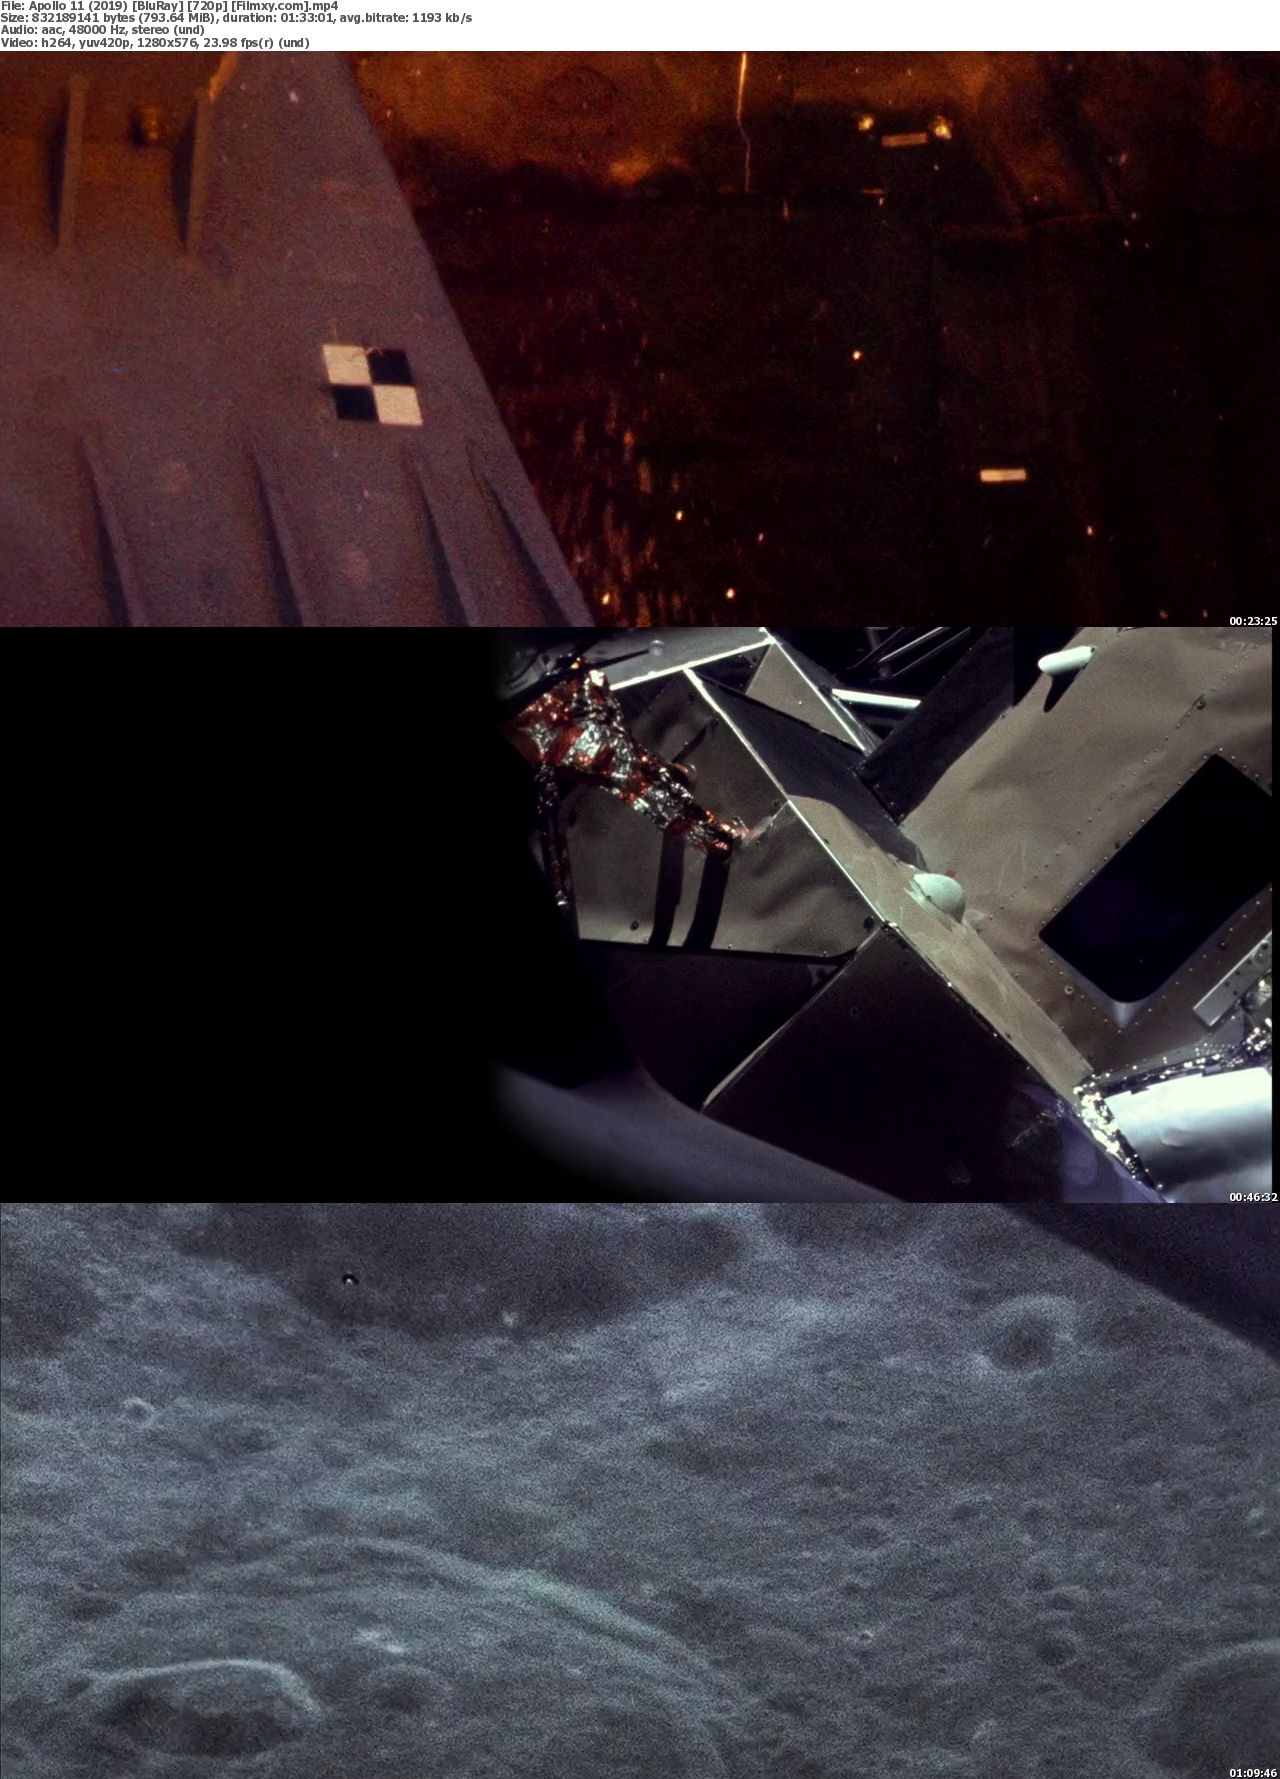 2019 Apollo 11